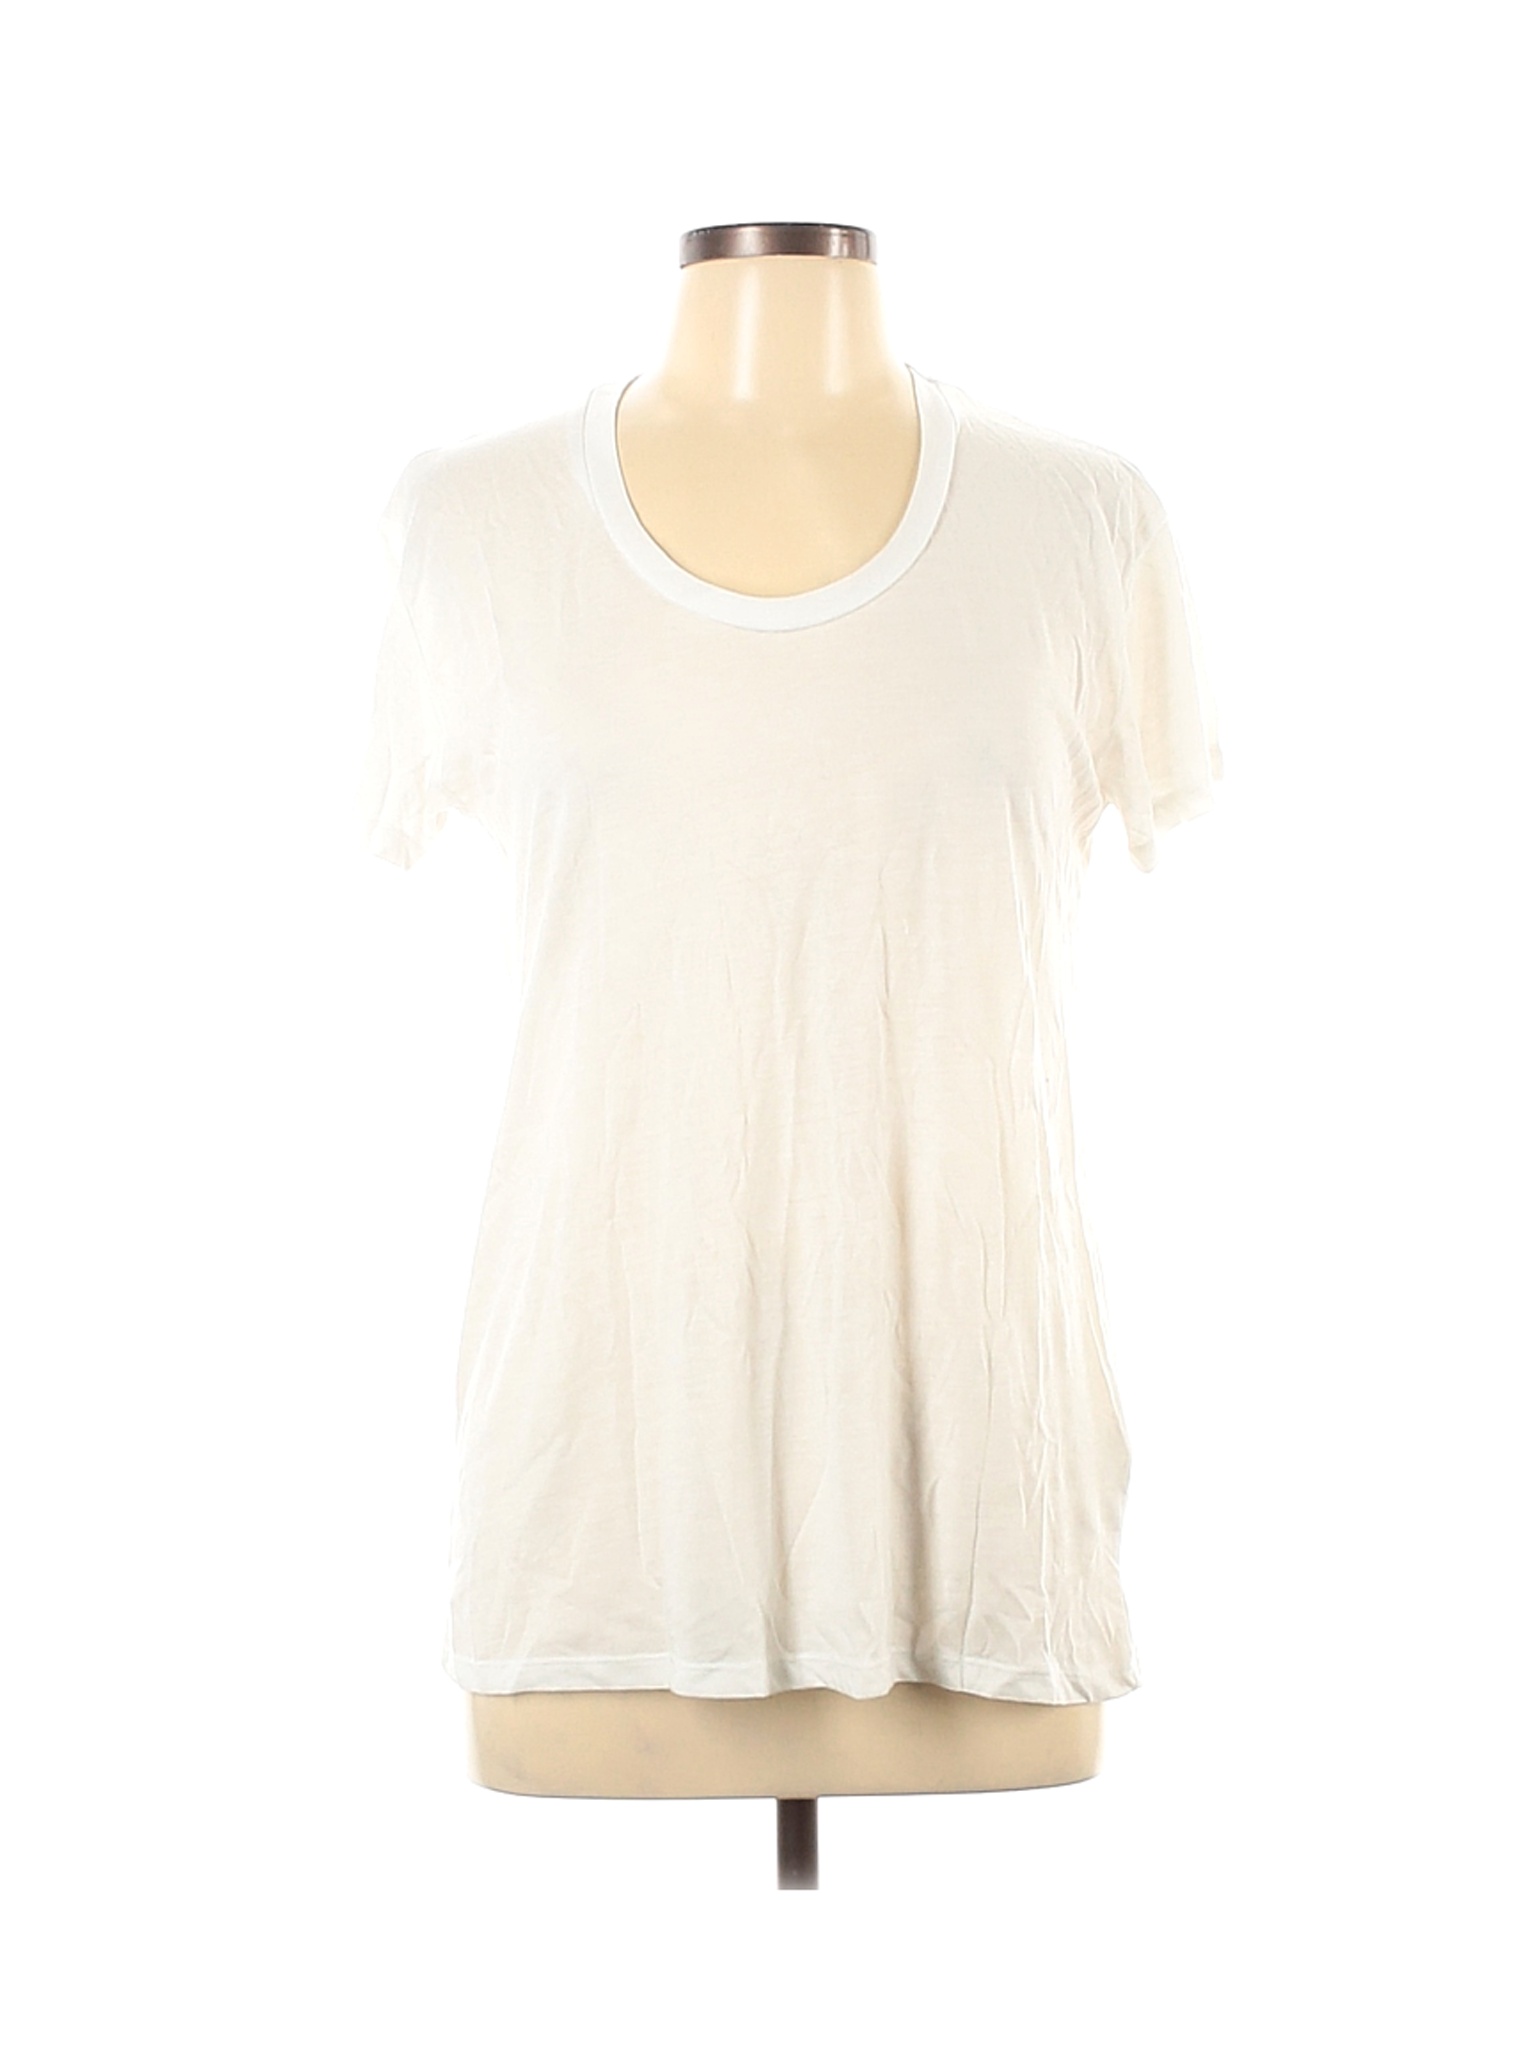 ALTERNATIVE Women Ivory Short Sleeve T-Shirt L | eBay